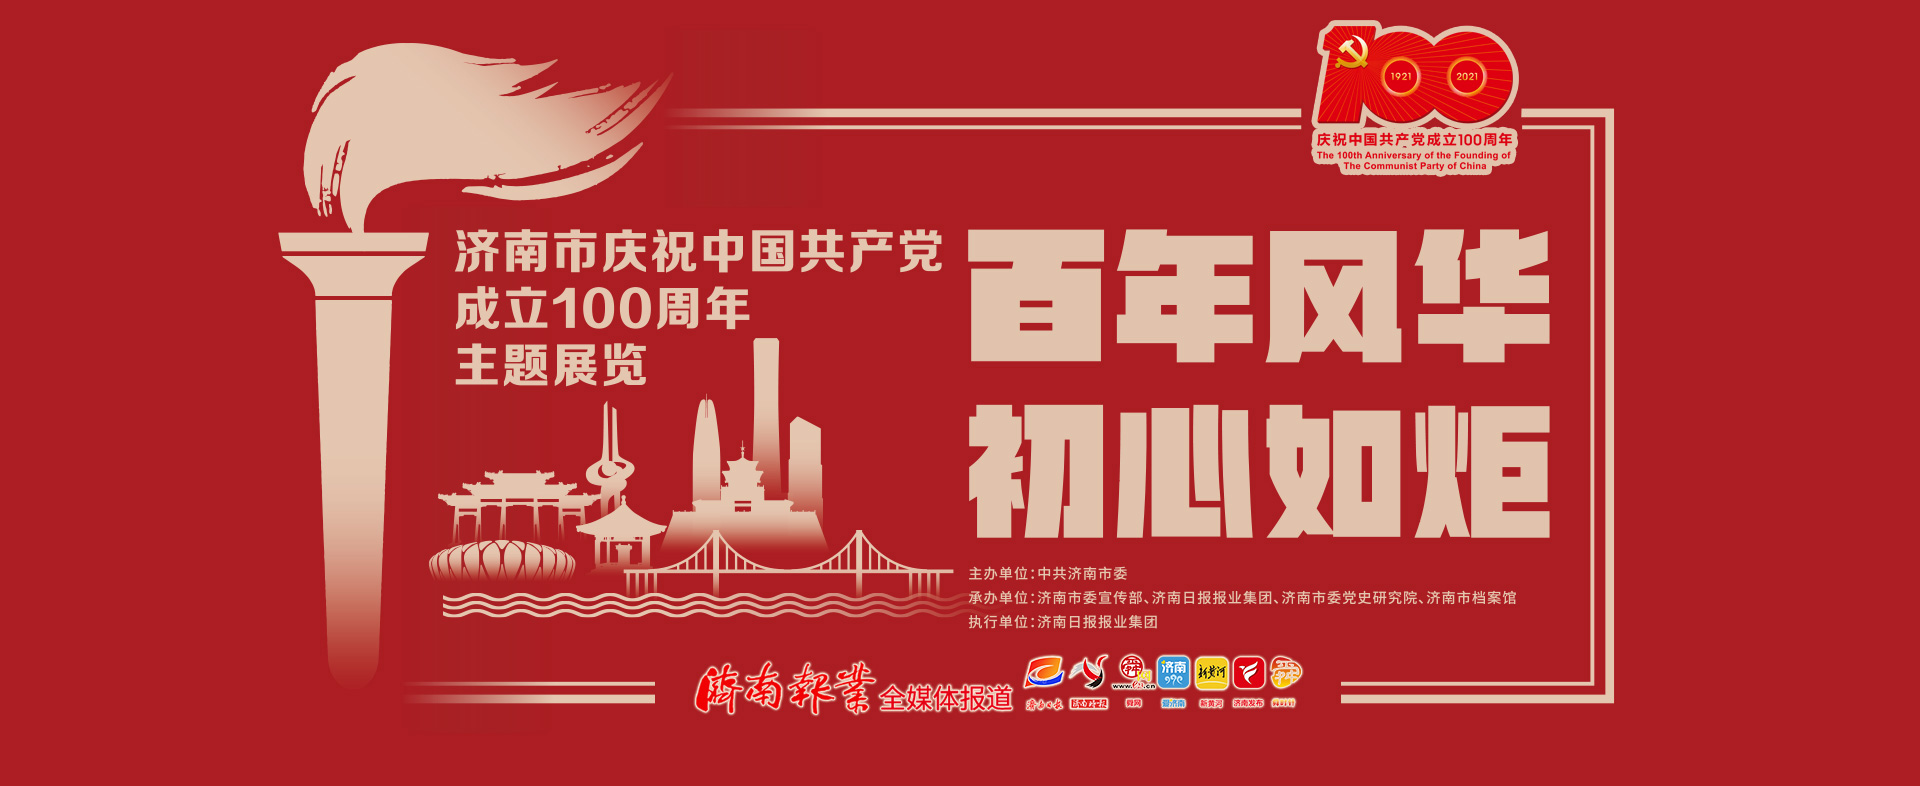 【百年风华 初心如炬】济南市庆祝中国共产党成立100周年主题展第38号“讲解员”为什么这么红？